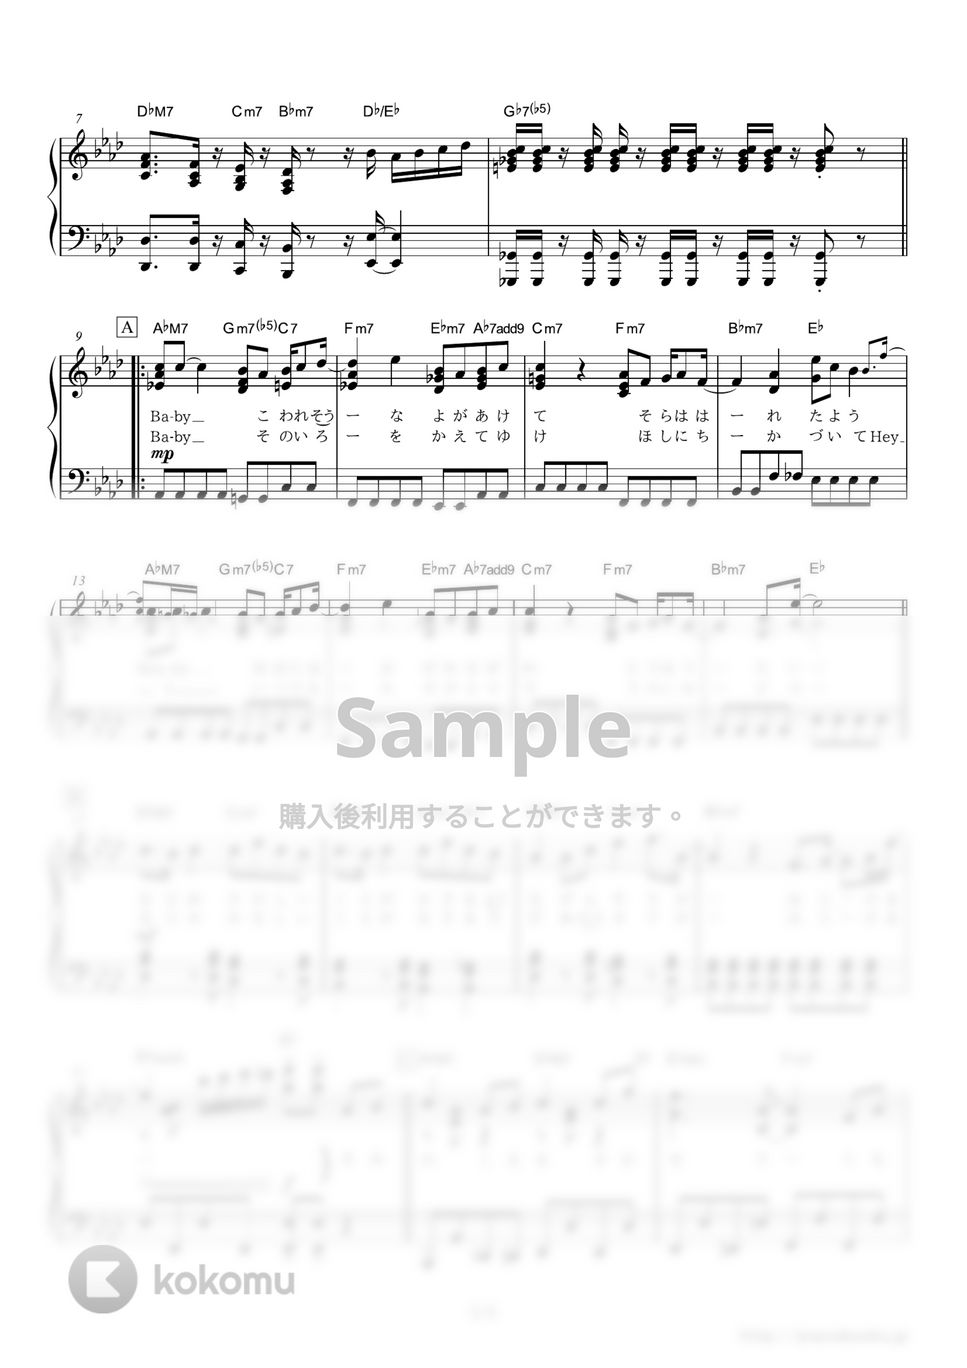 星野源 - SUN (ドラマ『心がポキッとね』主題歌) by ピアノの本棚